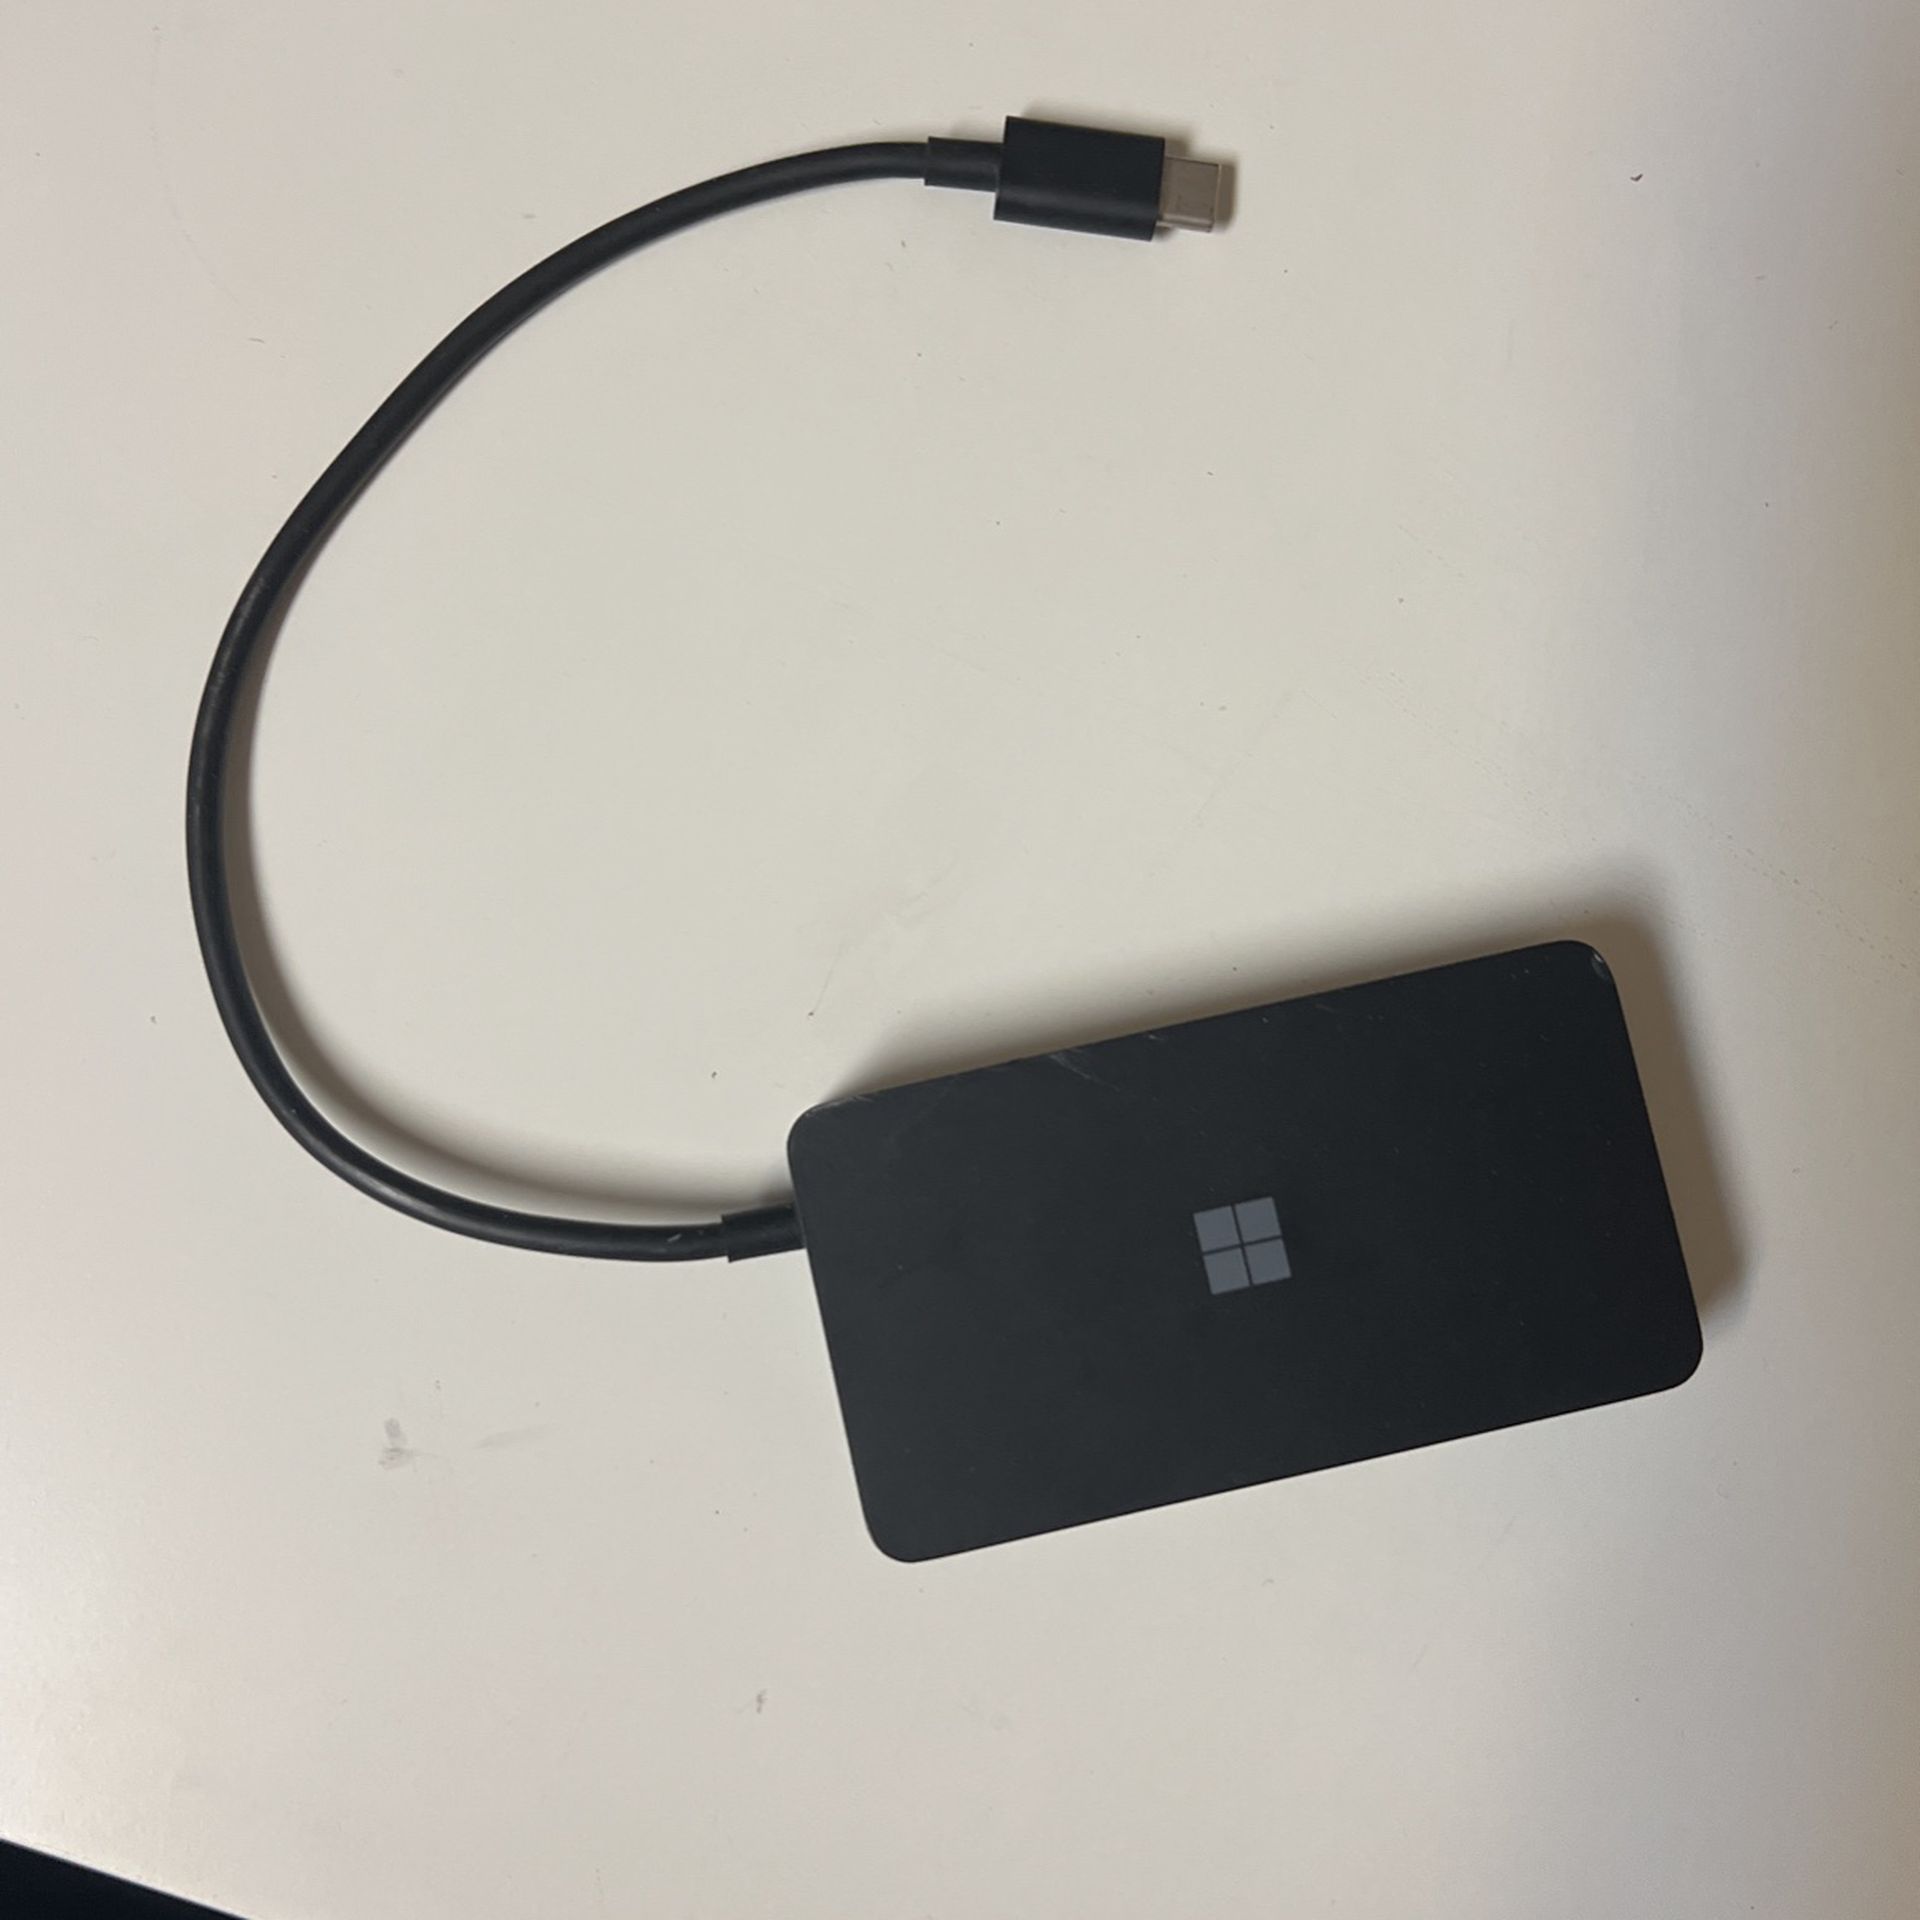 Microsoft USB Surface Travel Hub